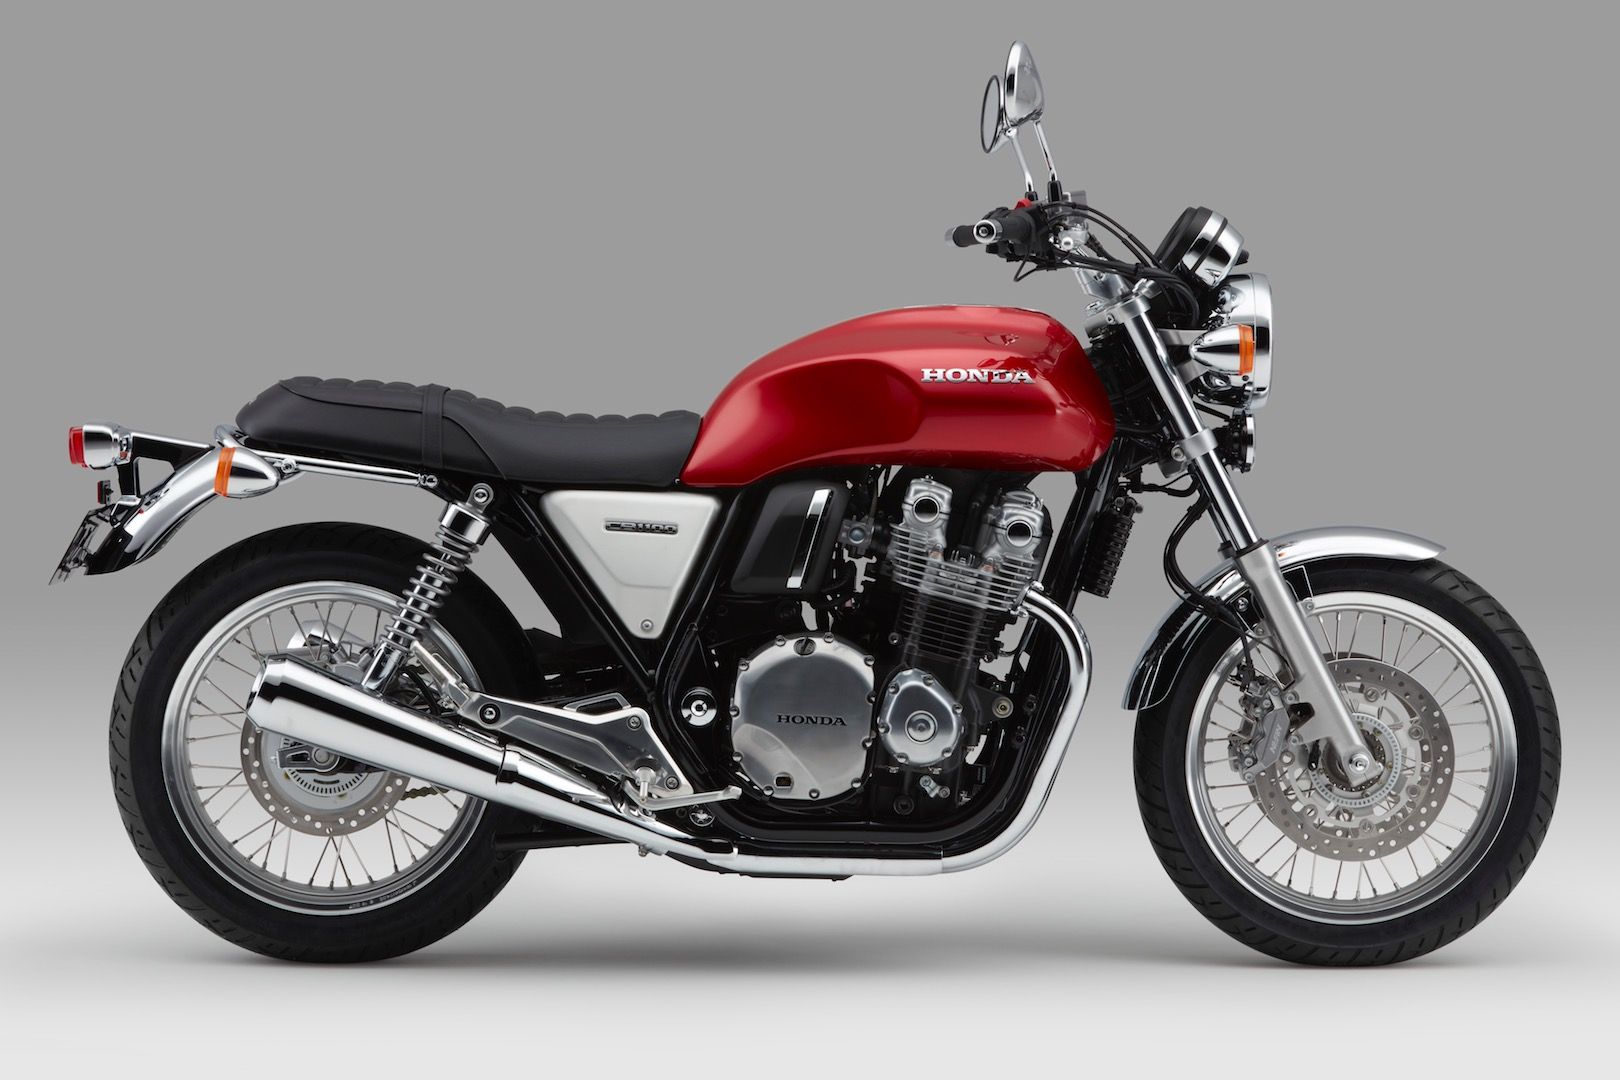 2017-Honda-CB1100-EX-First-Look-Preview-vintage-motorcycle-7.jpg